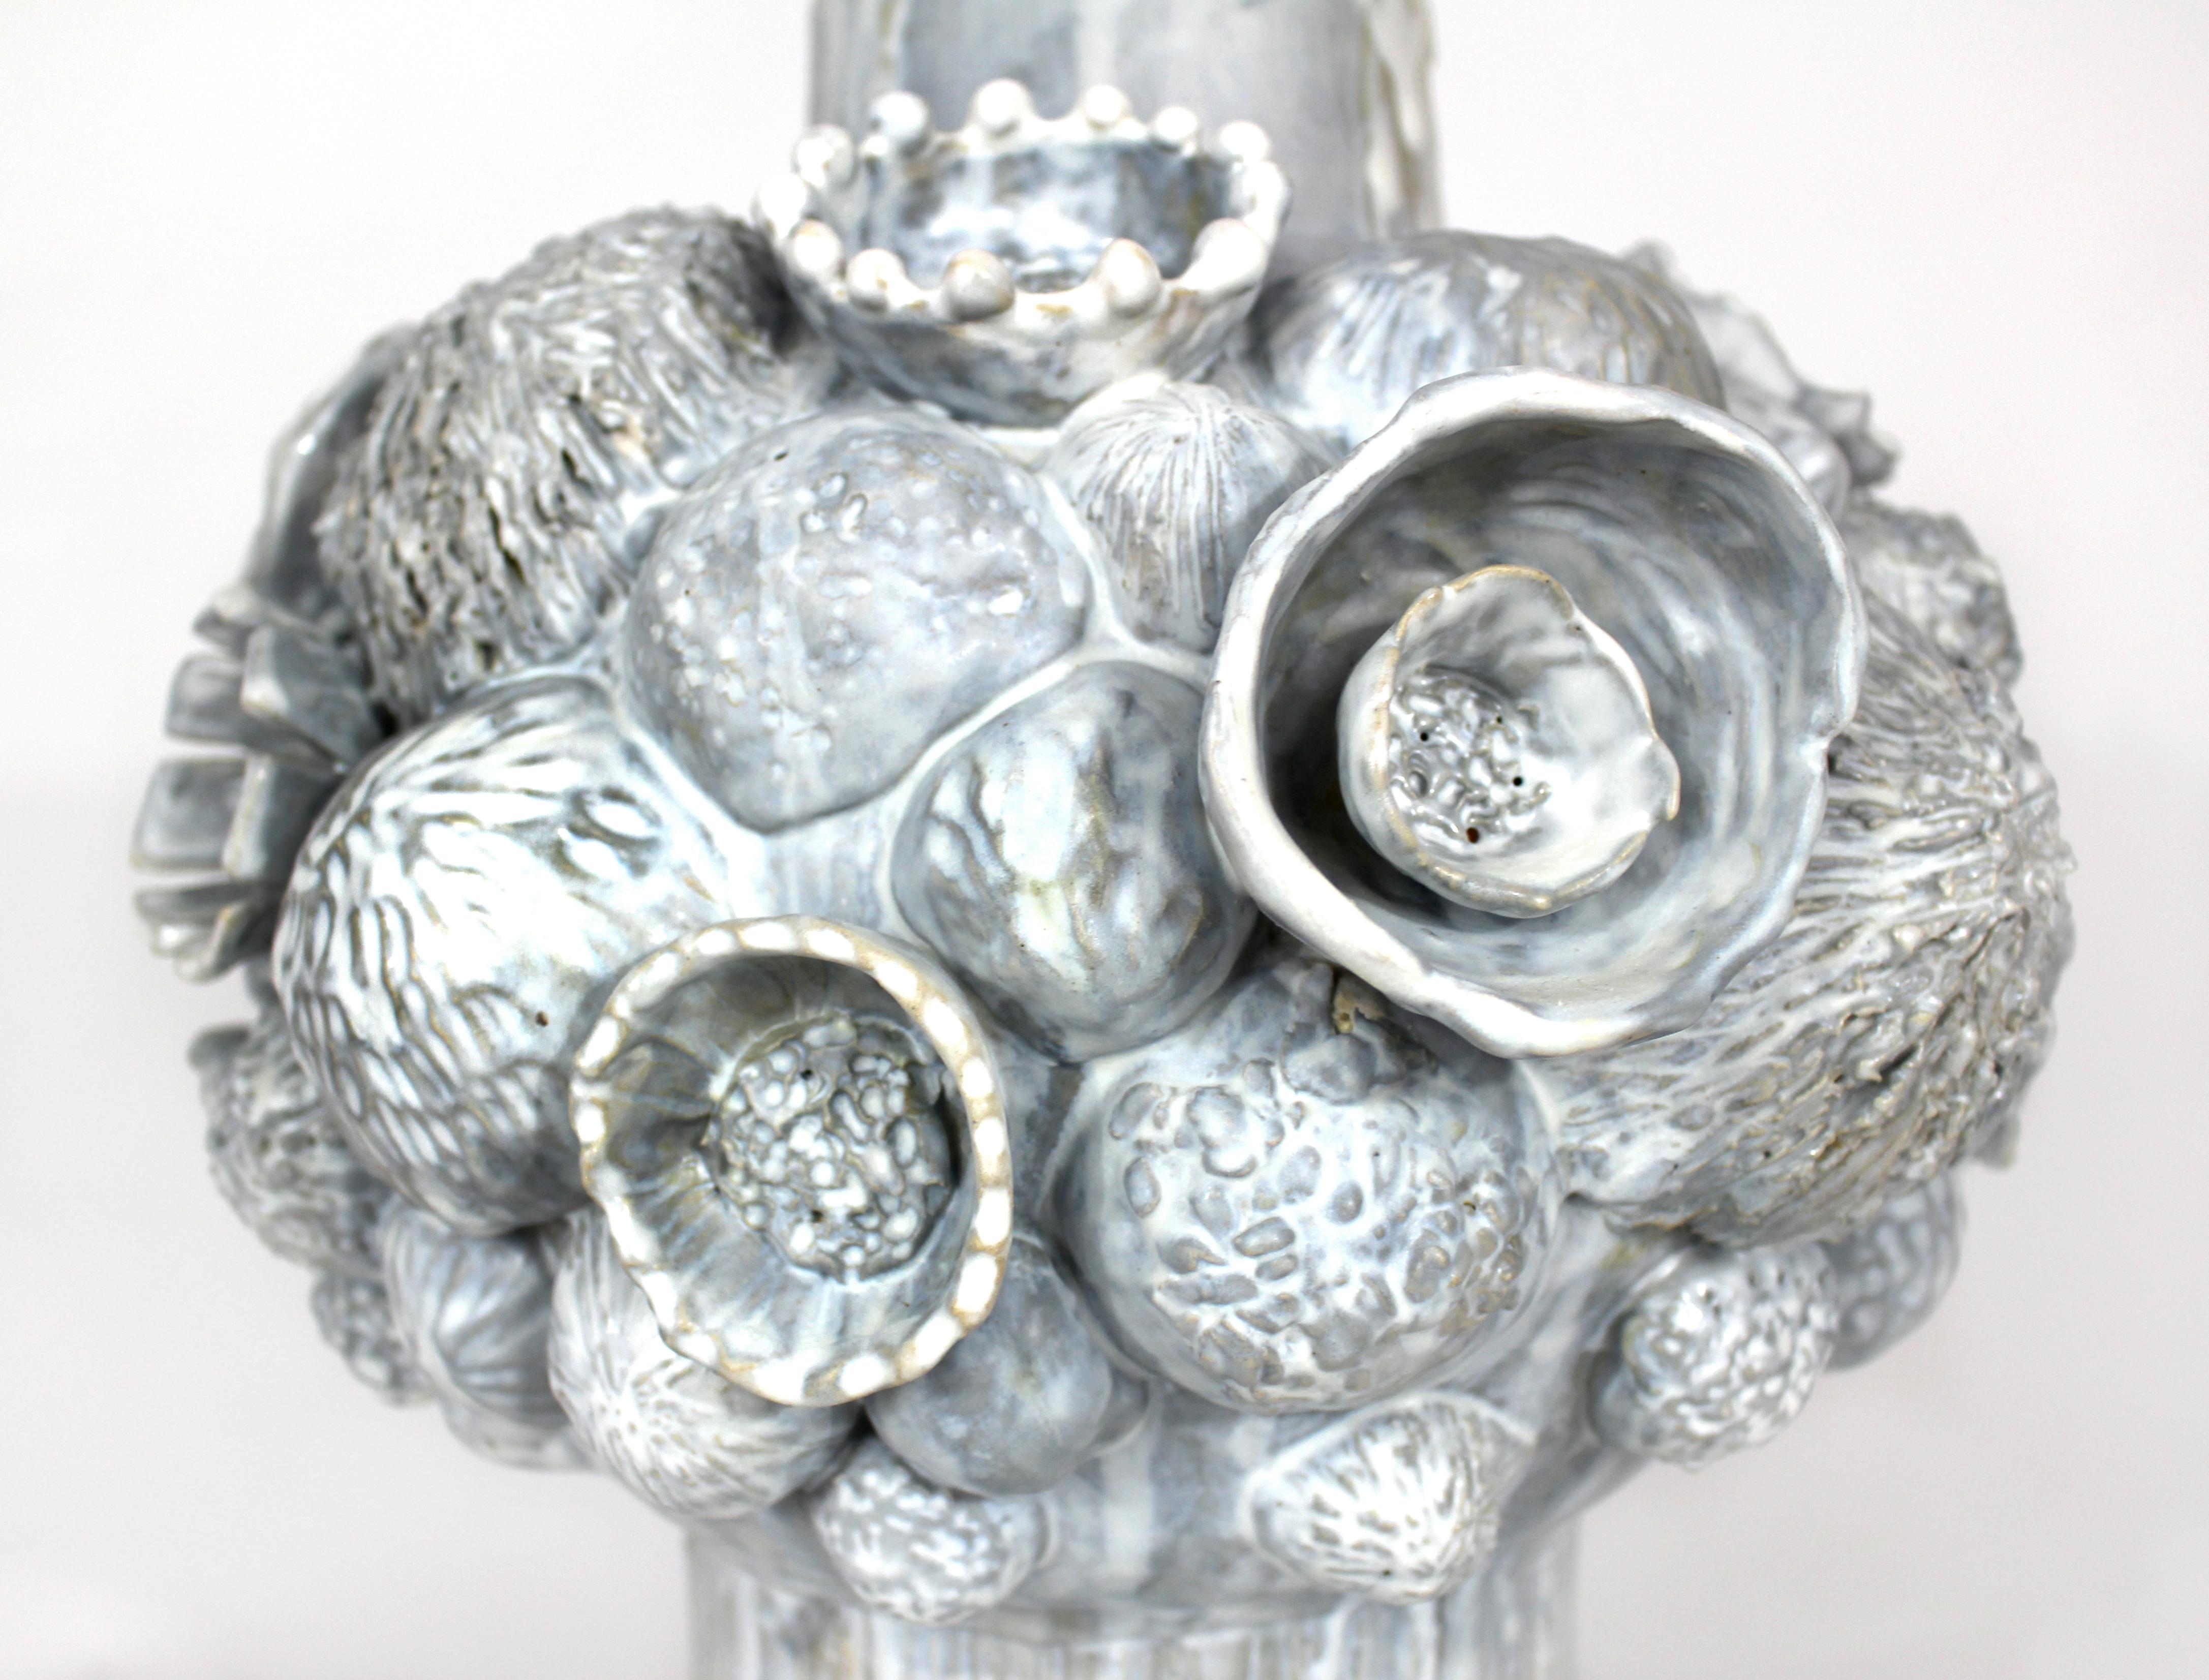 Contemporary Botanica Ceramic Vase by Trish DeMasi